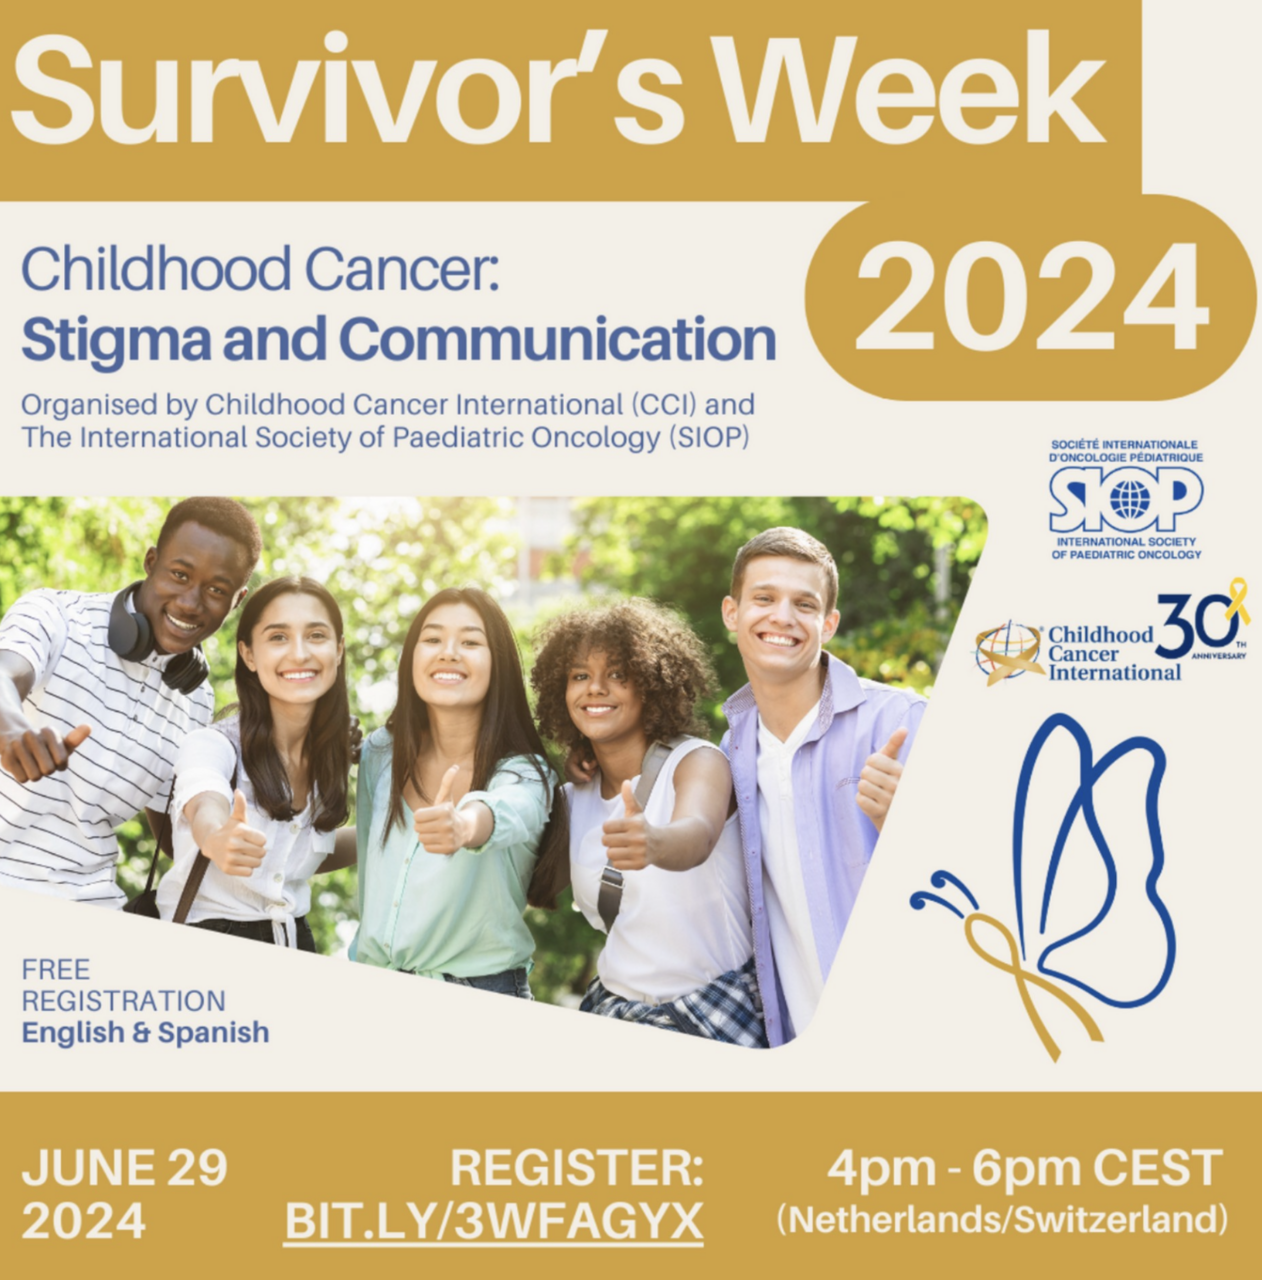 Sign up for our upcoming Survivor’s Week Webinar on June 29 – Childhood Cancer International